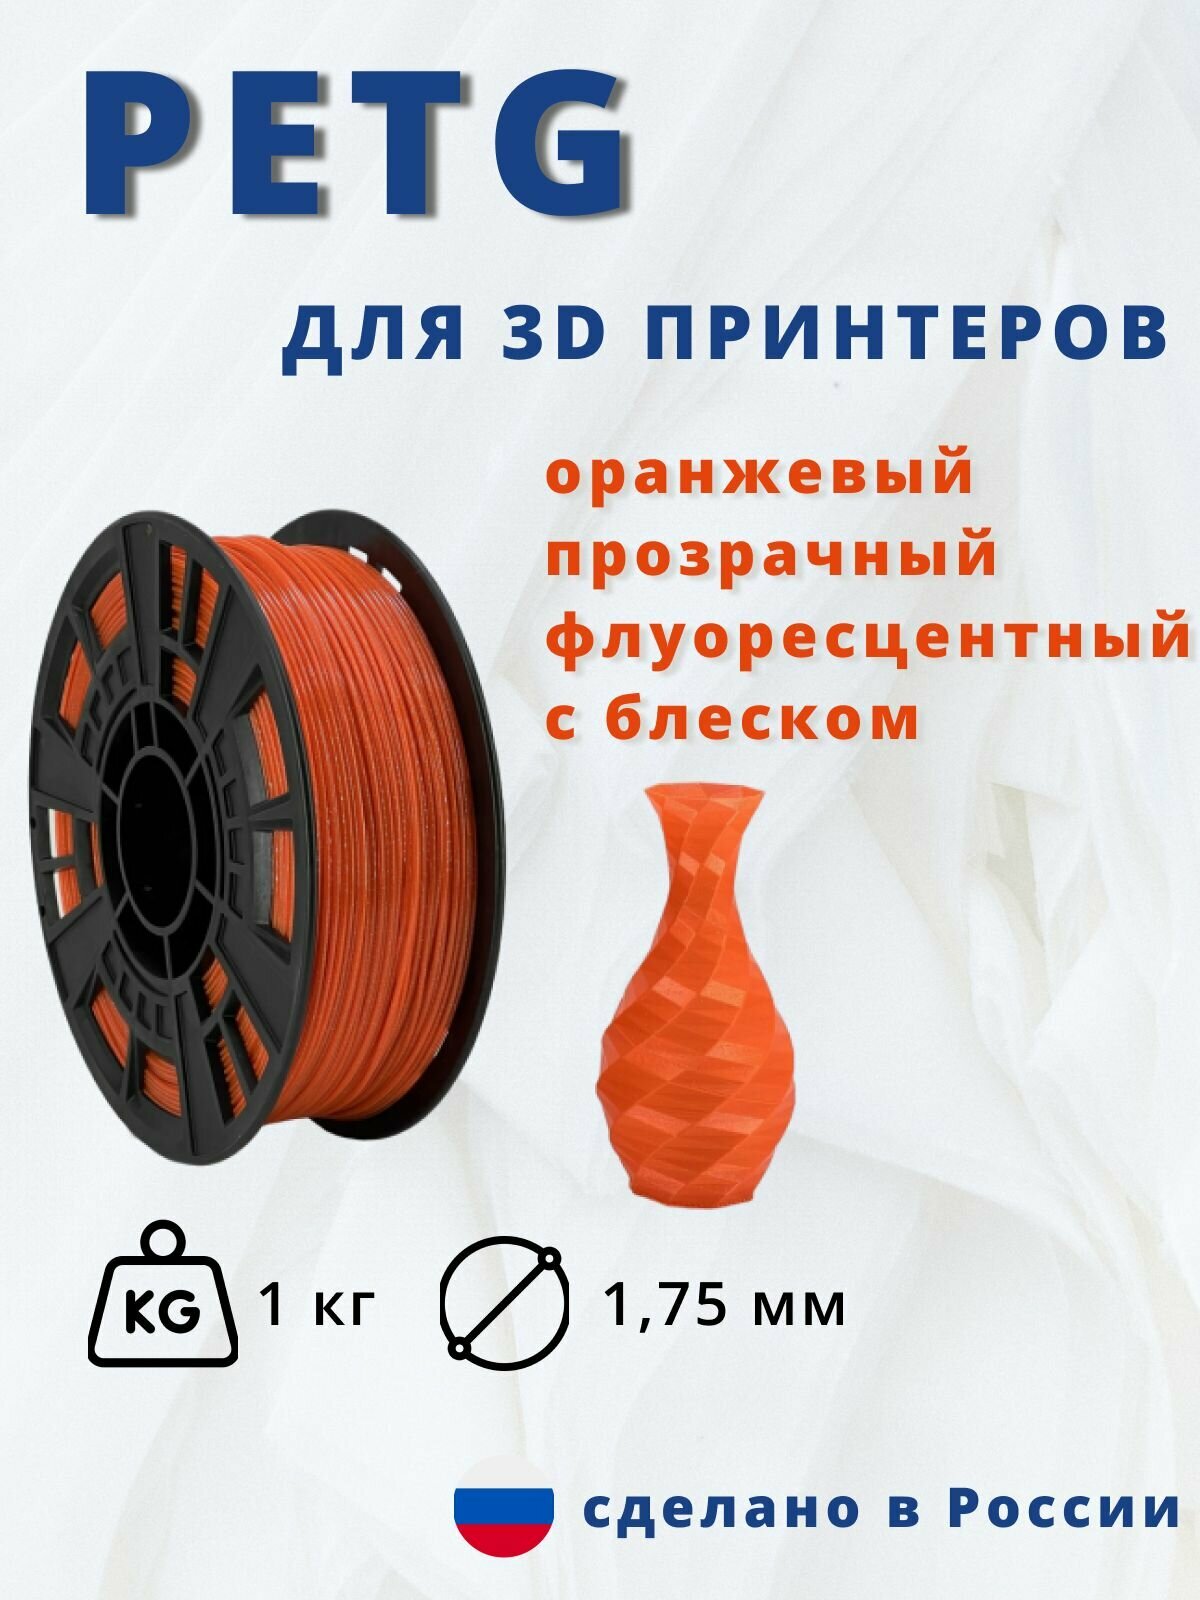 Пластик для 3д печати "НИТ" Petg оранжевый прозрачный флуоресцентный с блеском 1кг